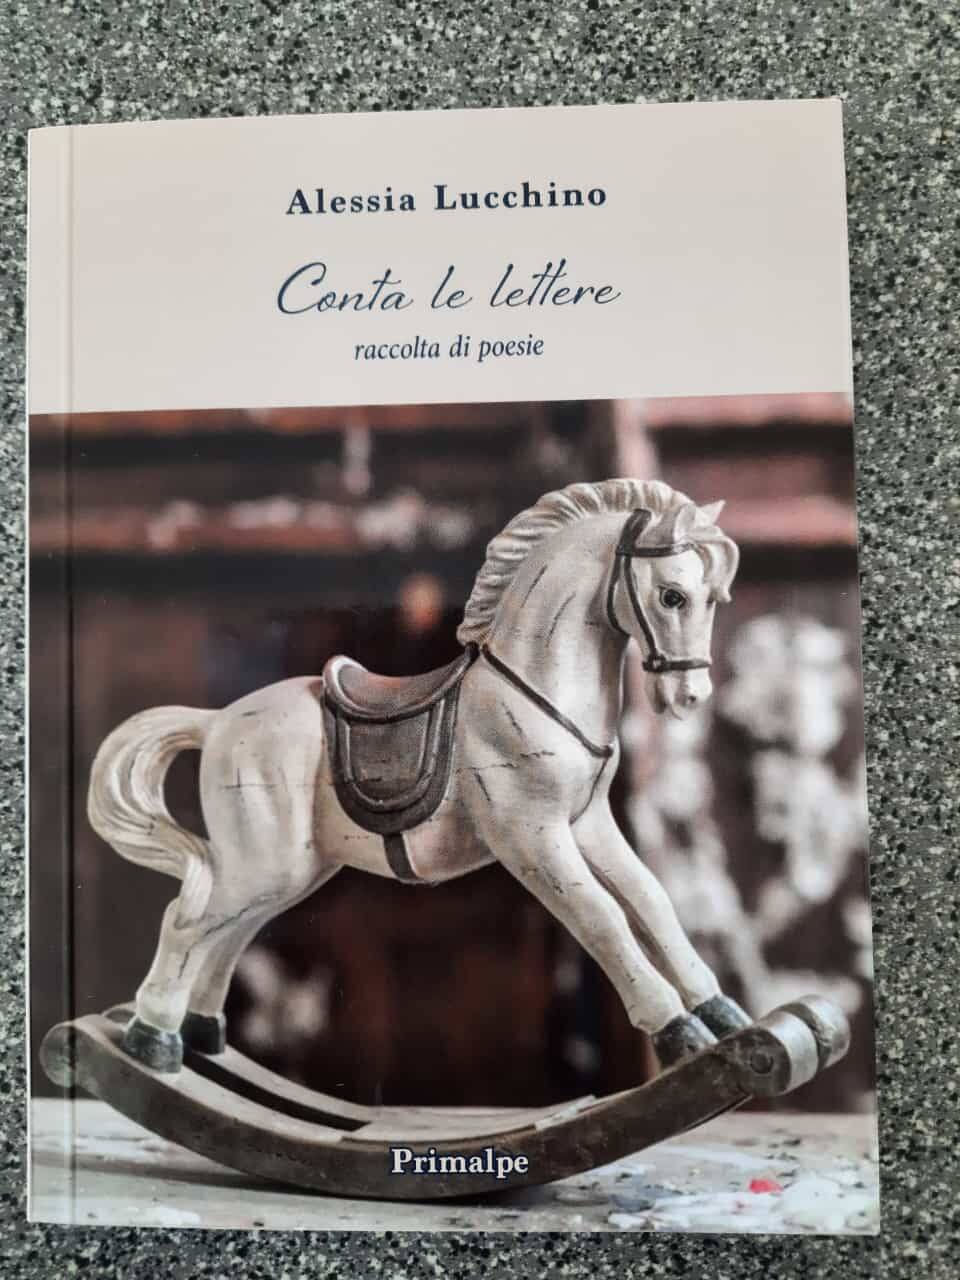 “Conta le lettere”, l’esordio letterario della promettente poetessa Alessia Lucchino